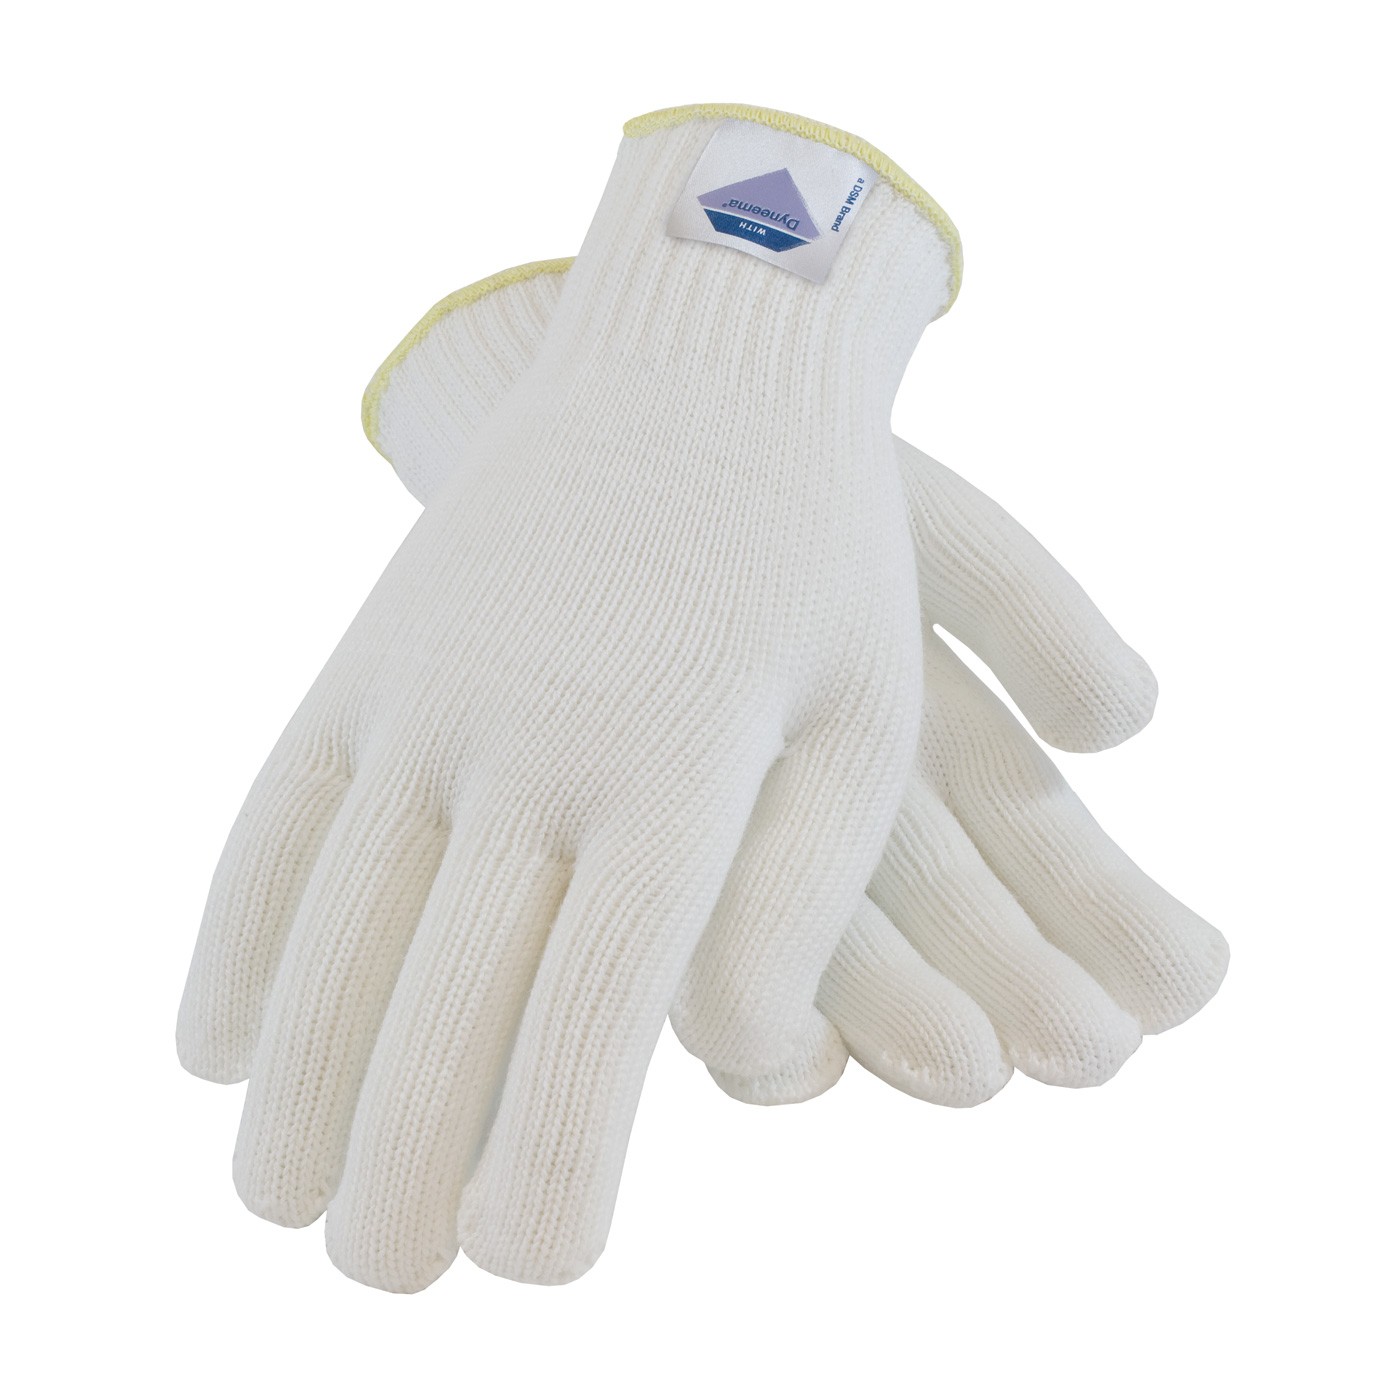 Gloves with Spun Dyneema, 7 Gauge, White, Medium Weight, ANSI2 Size Medium